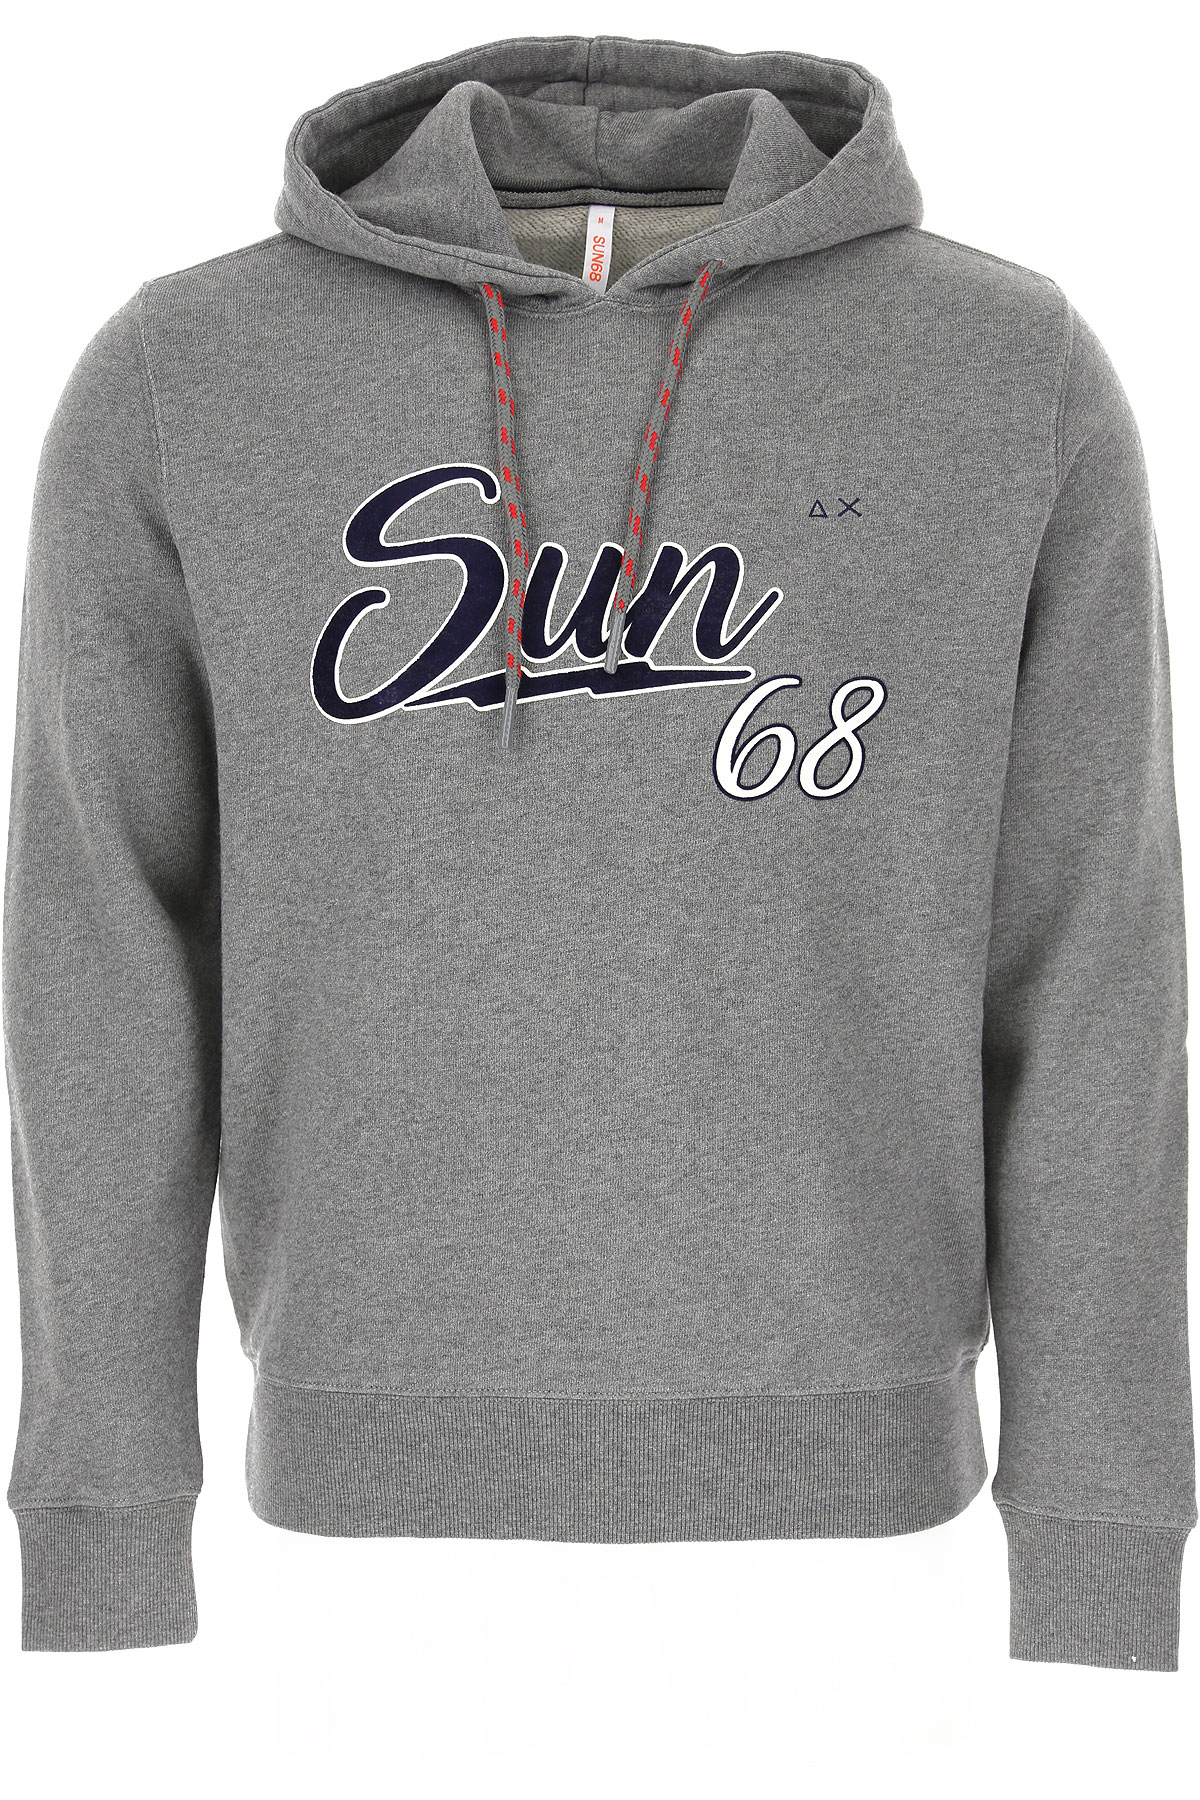 Sun68 Sweatshirt für Herren, Kapuzenpulli, Hoodie, Sweats Günstig im Sale, Grau, Baumwolle, 2017, L M S XL